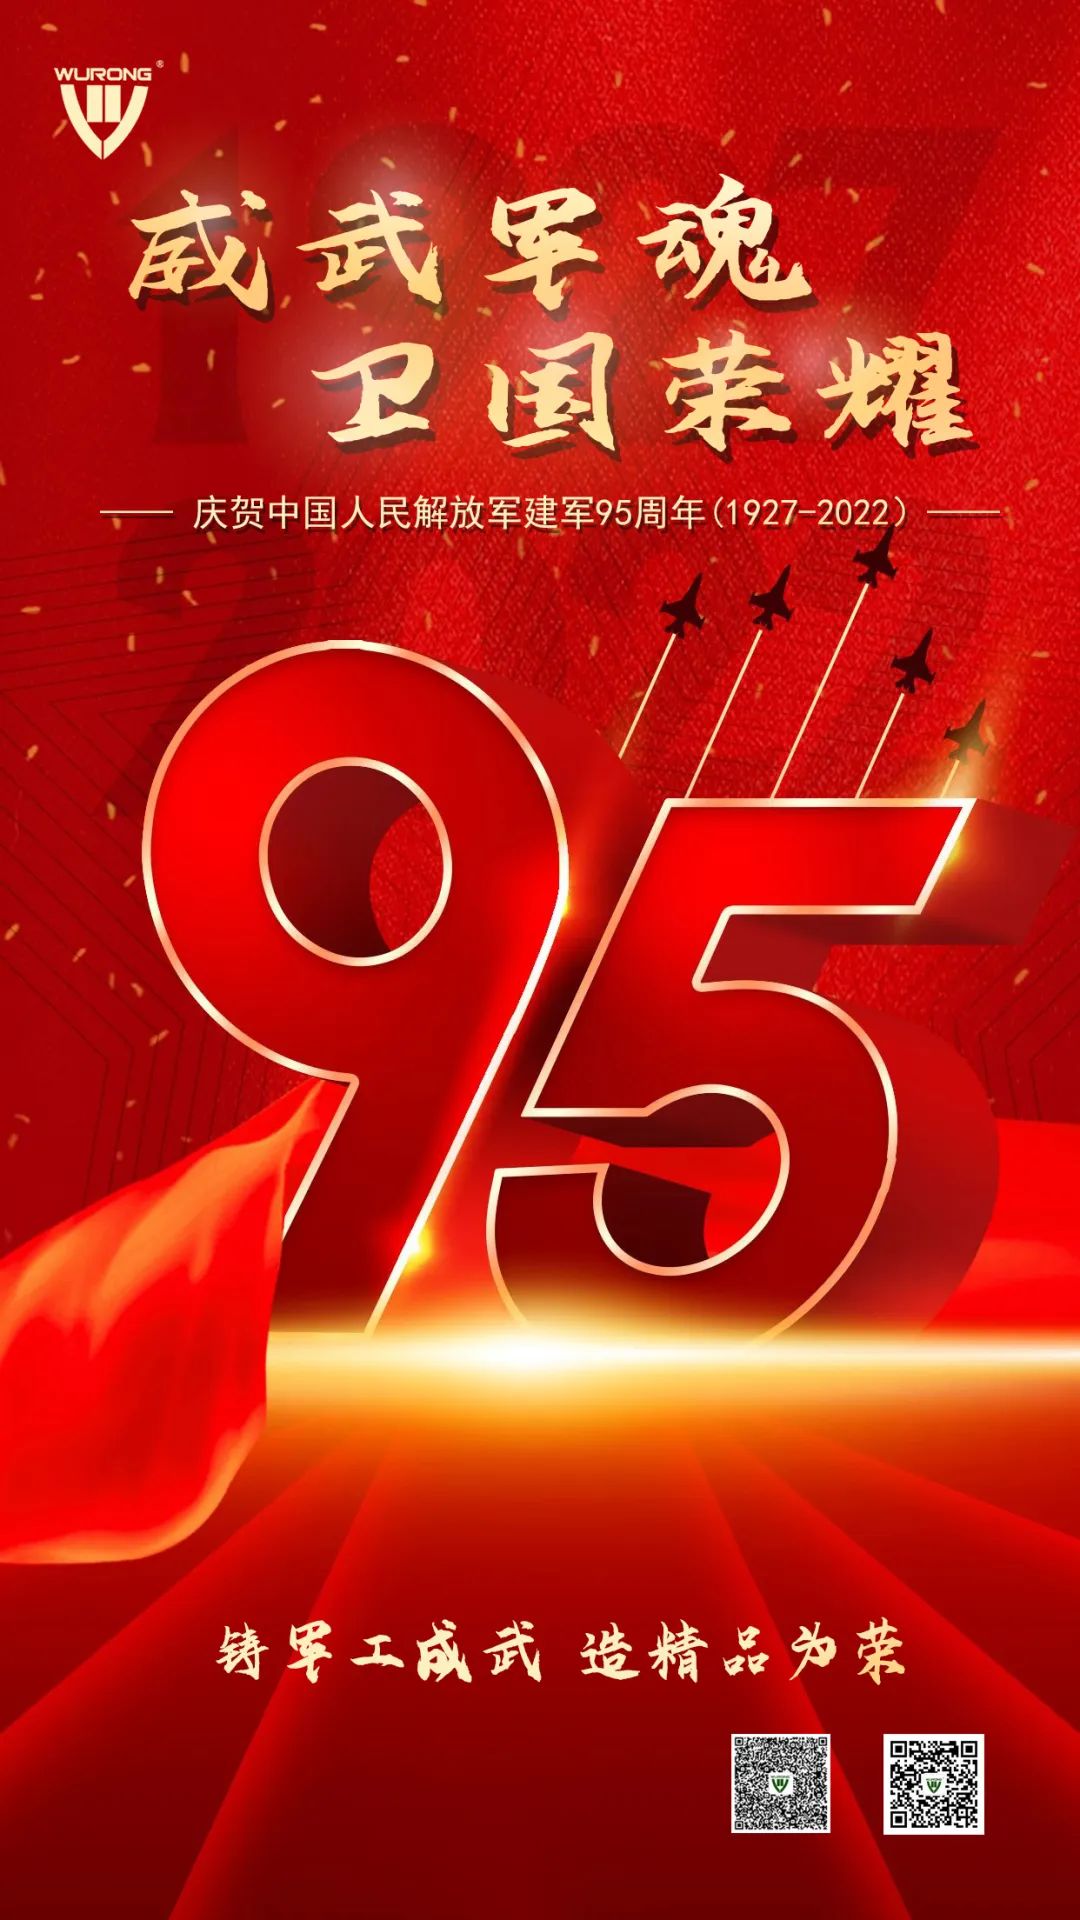 威武軍魂 衛國榮耀——熱烈慶祝中國人民解放軍建軍95周年！